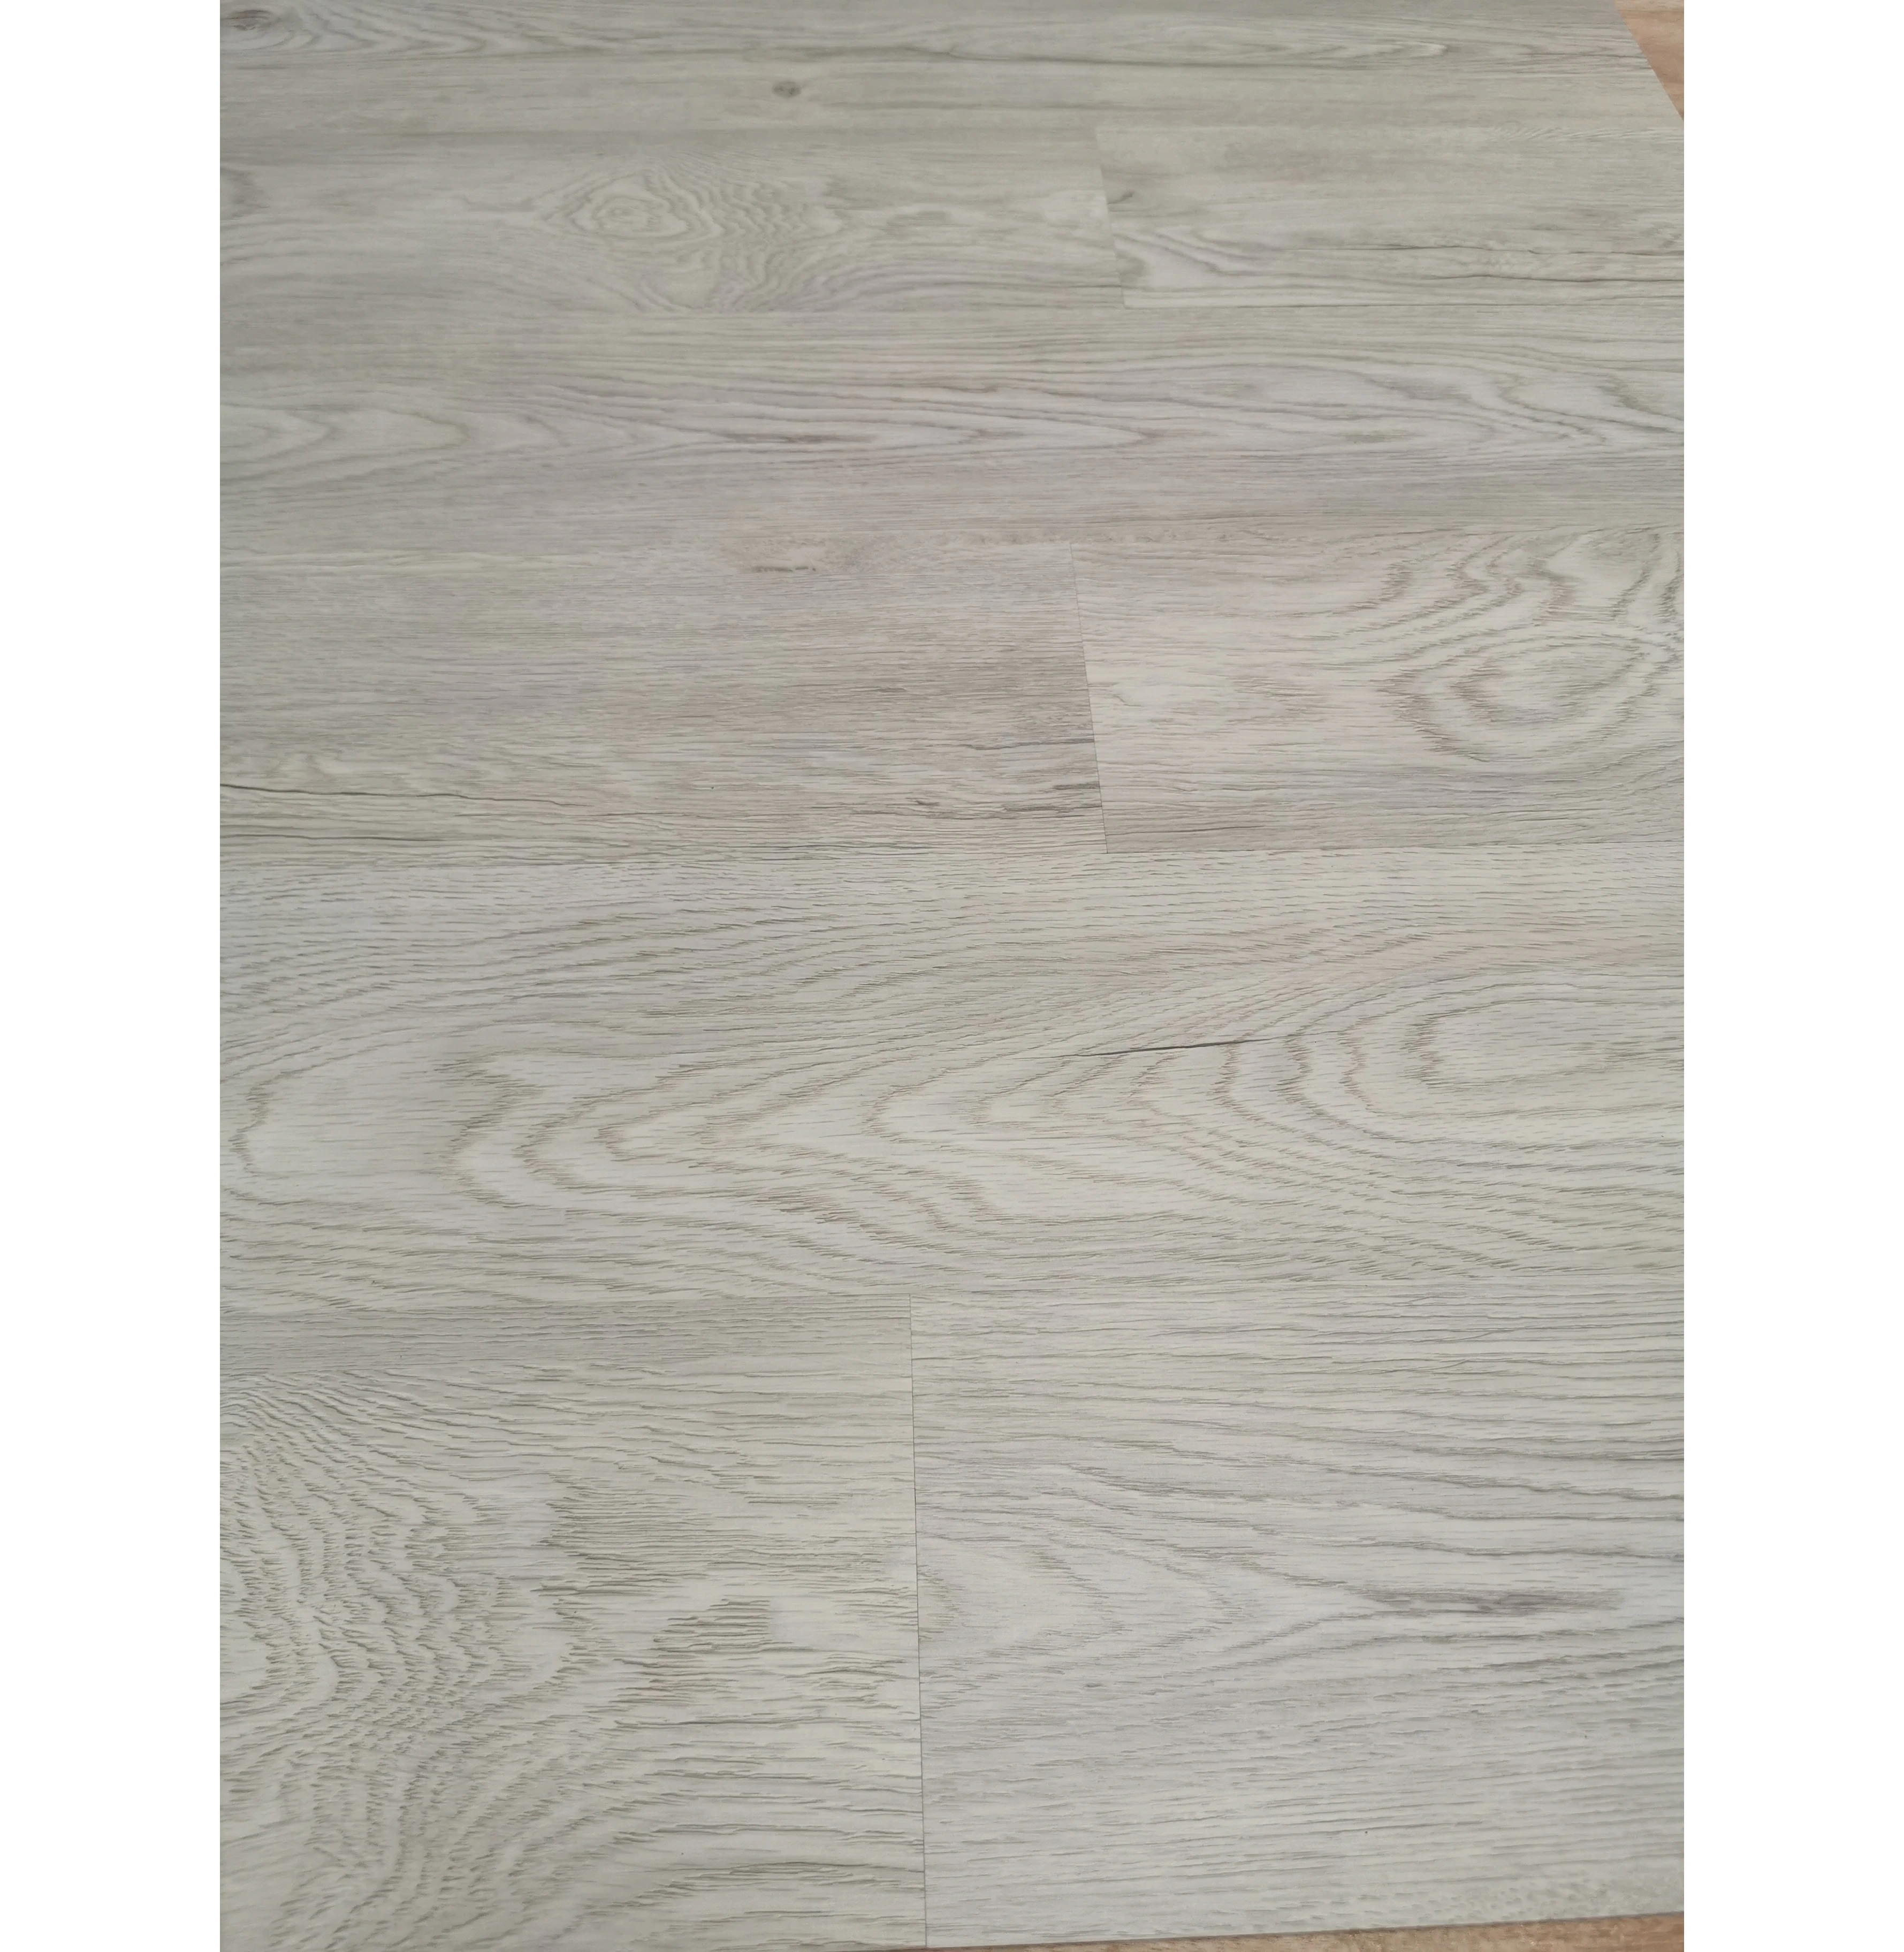 vinyl flooring plank